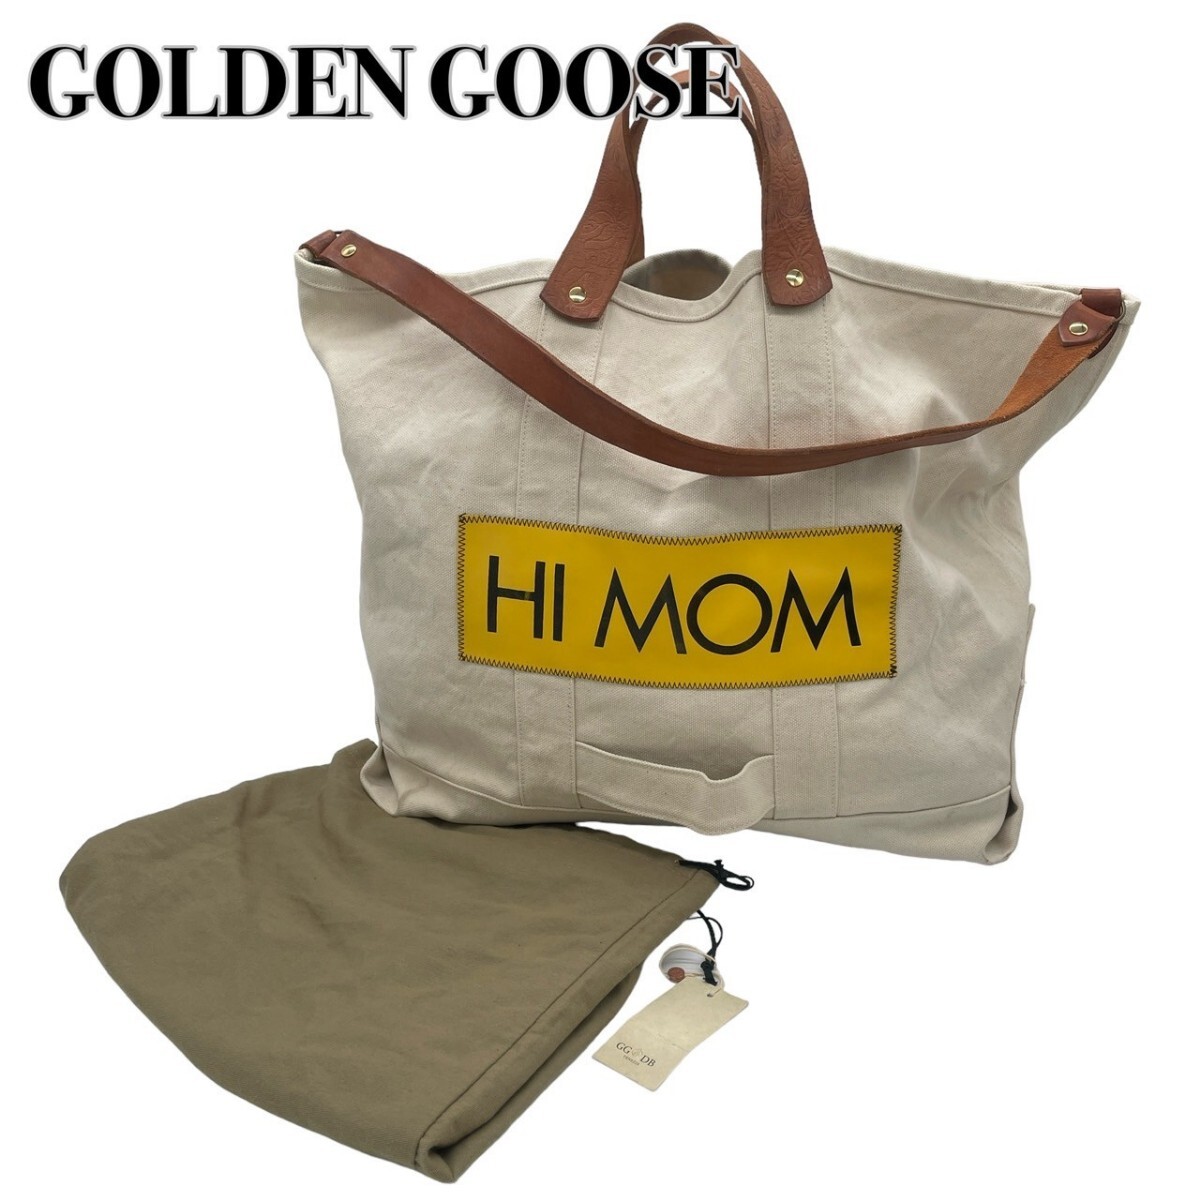 GOLDEN GOOSEゴールデングース エキパージュ キャンバストート ショルダー 保存袋付き マザーズバッグ